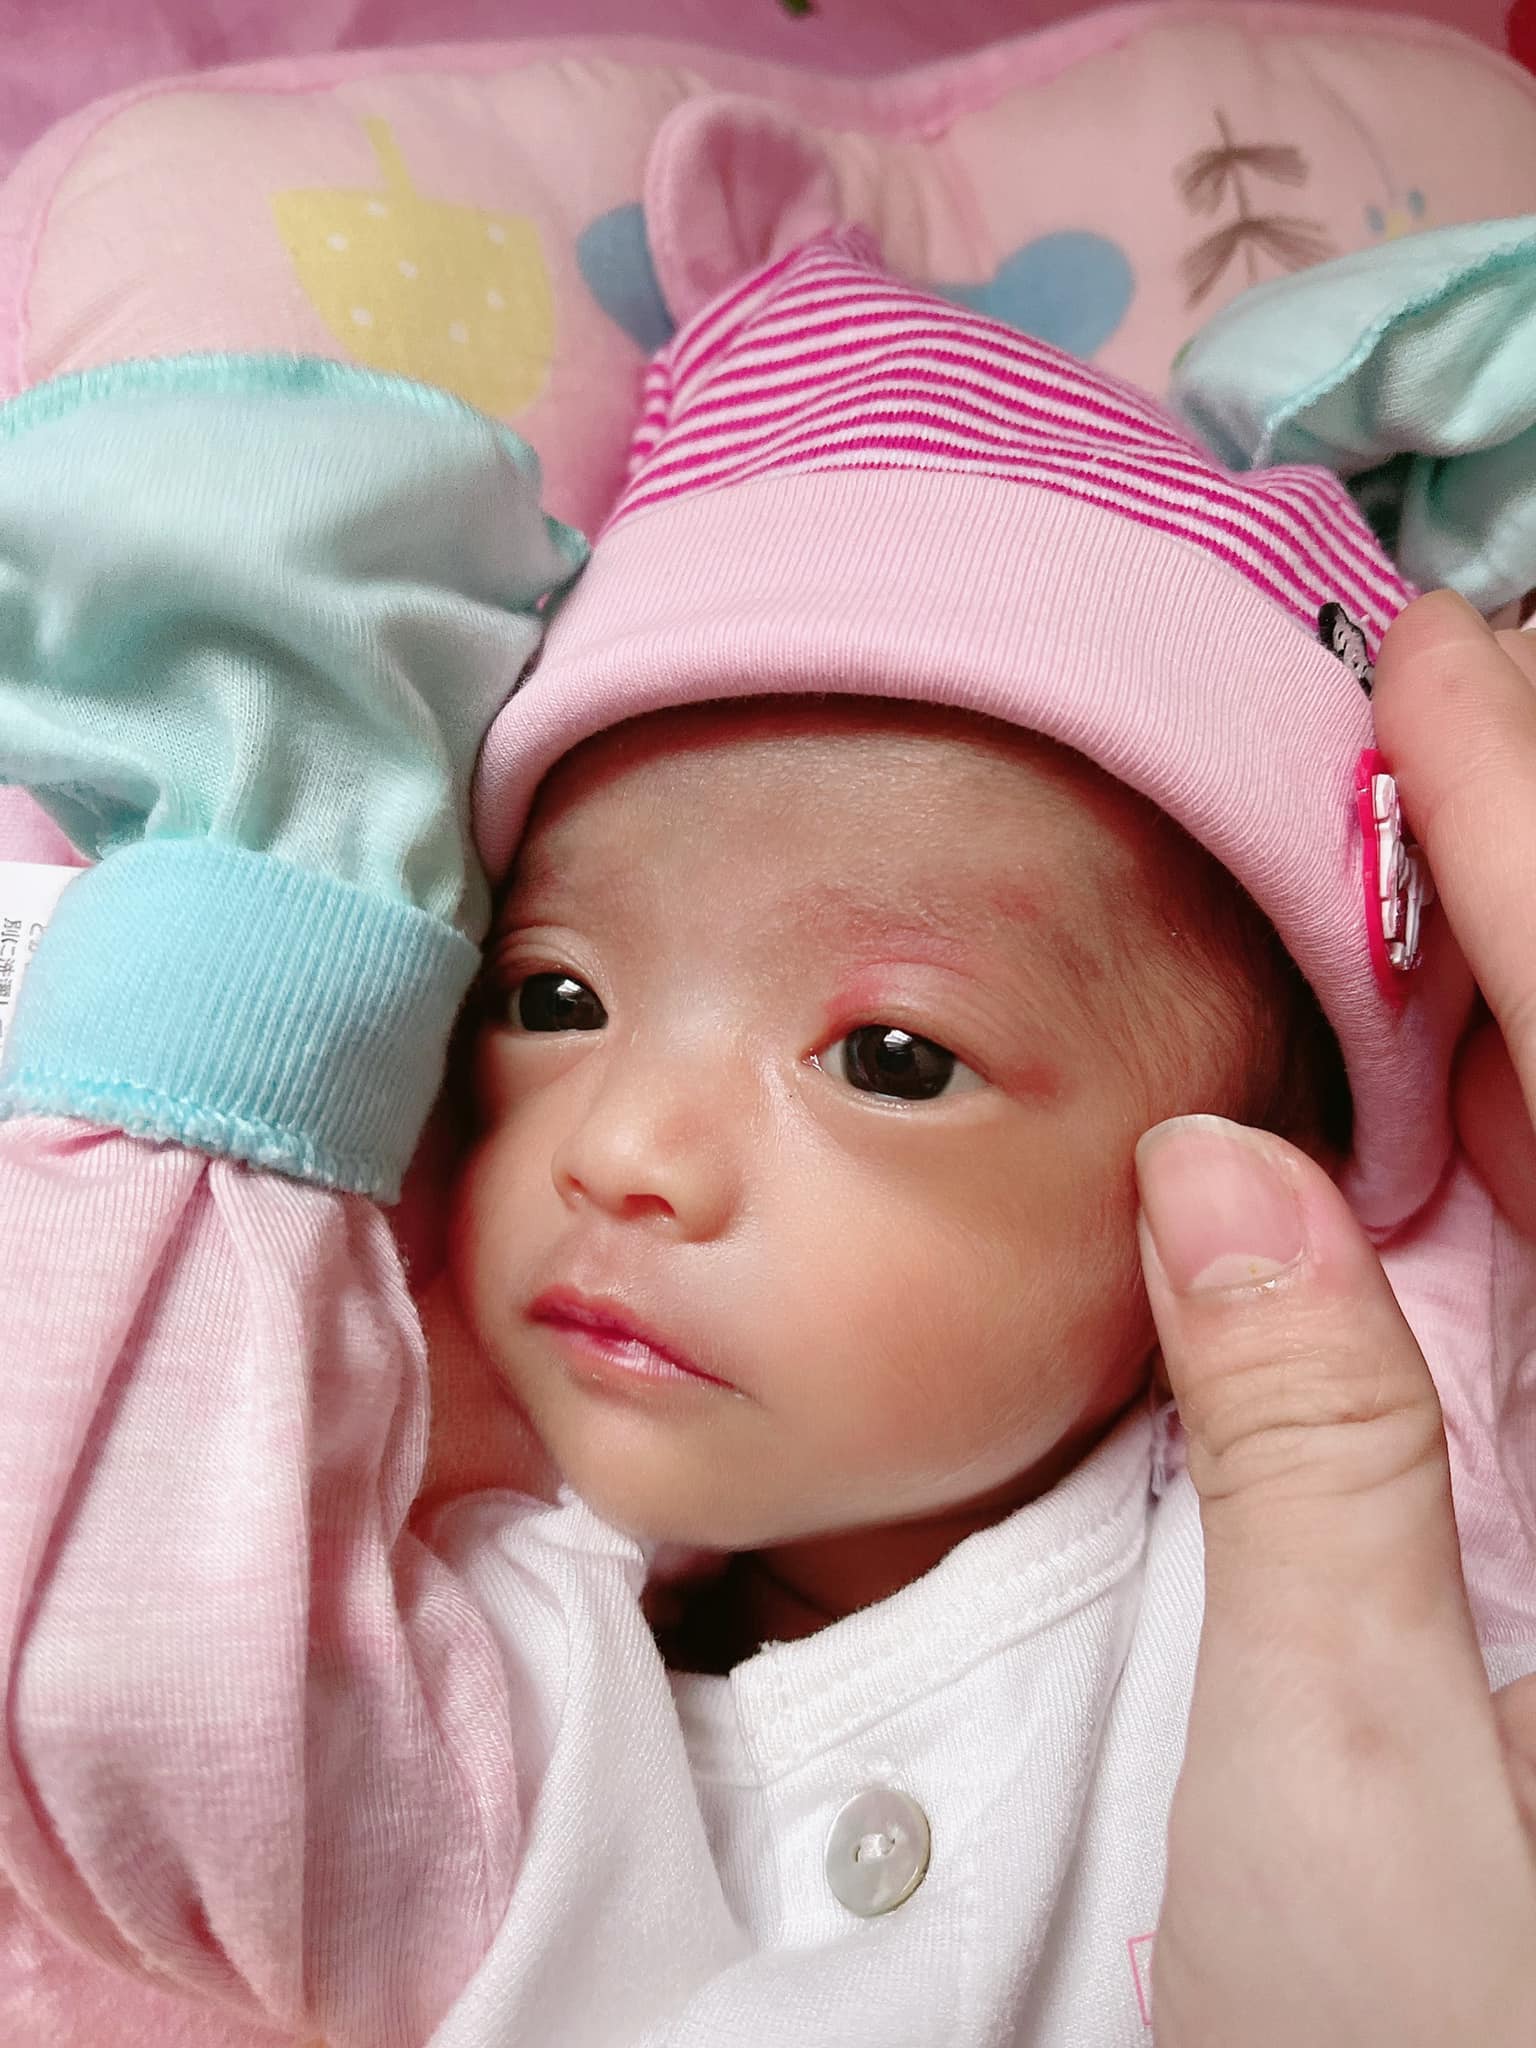 Con gái Mạc Văn Khoa từ sinh non 1,9kg đã thay đổi thế nào sau hơn 3 tháng chăm sóc?